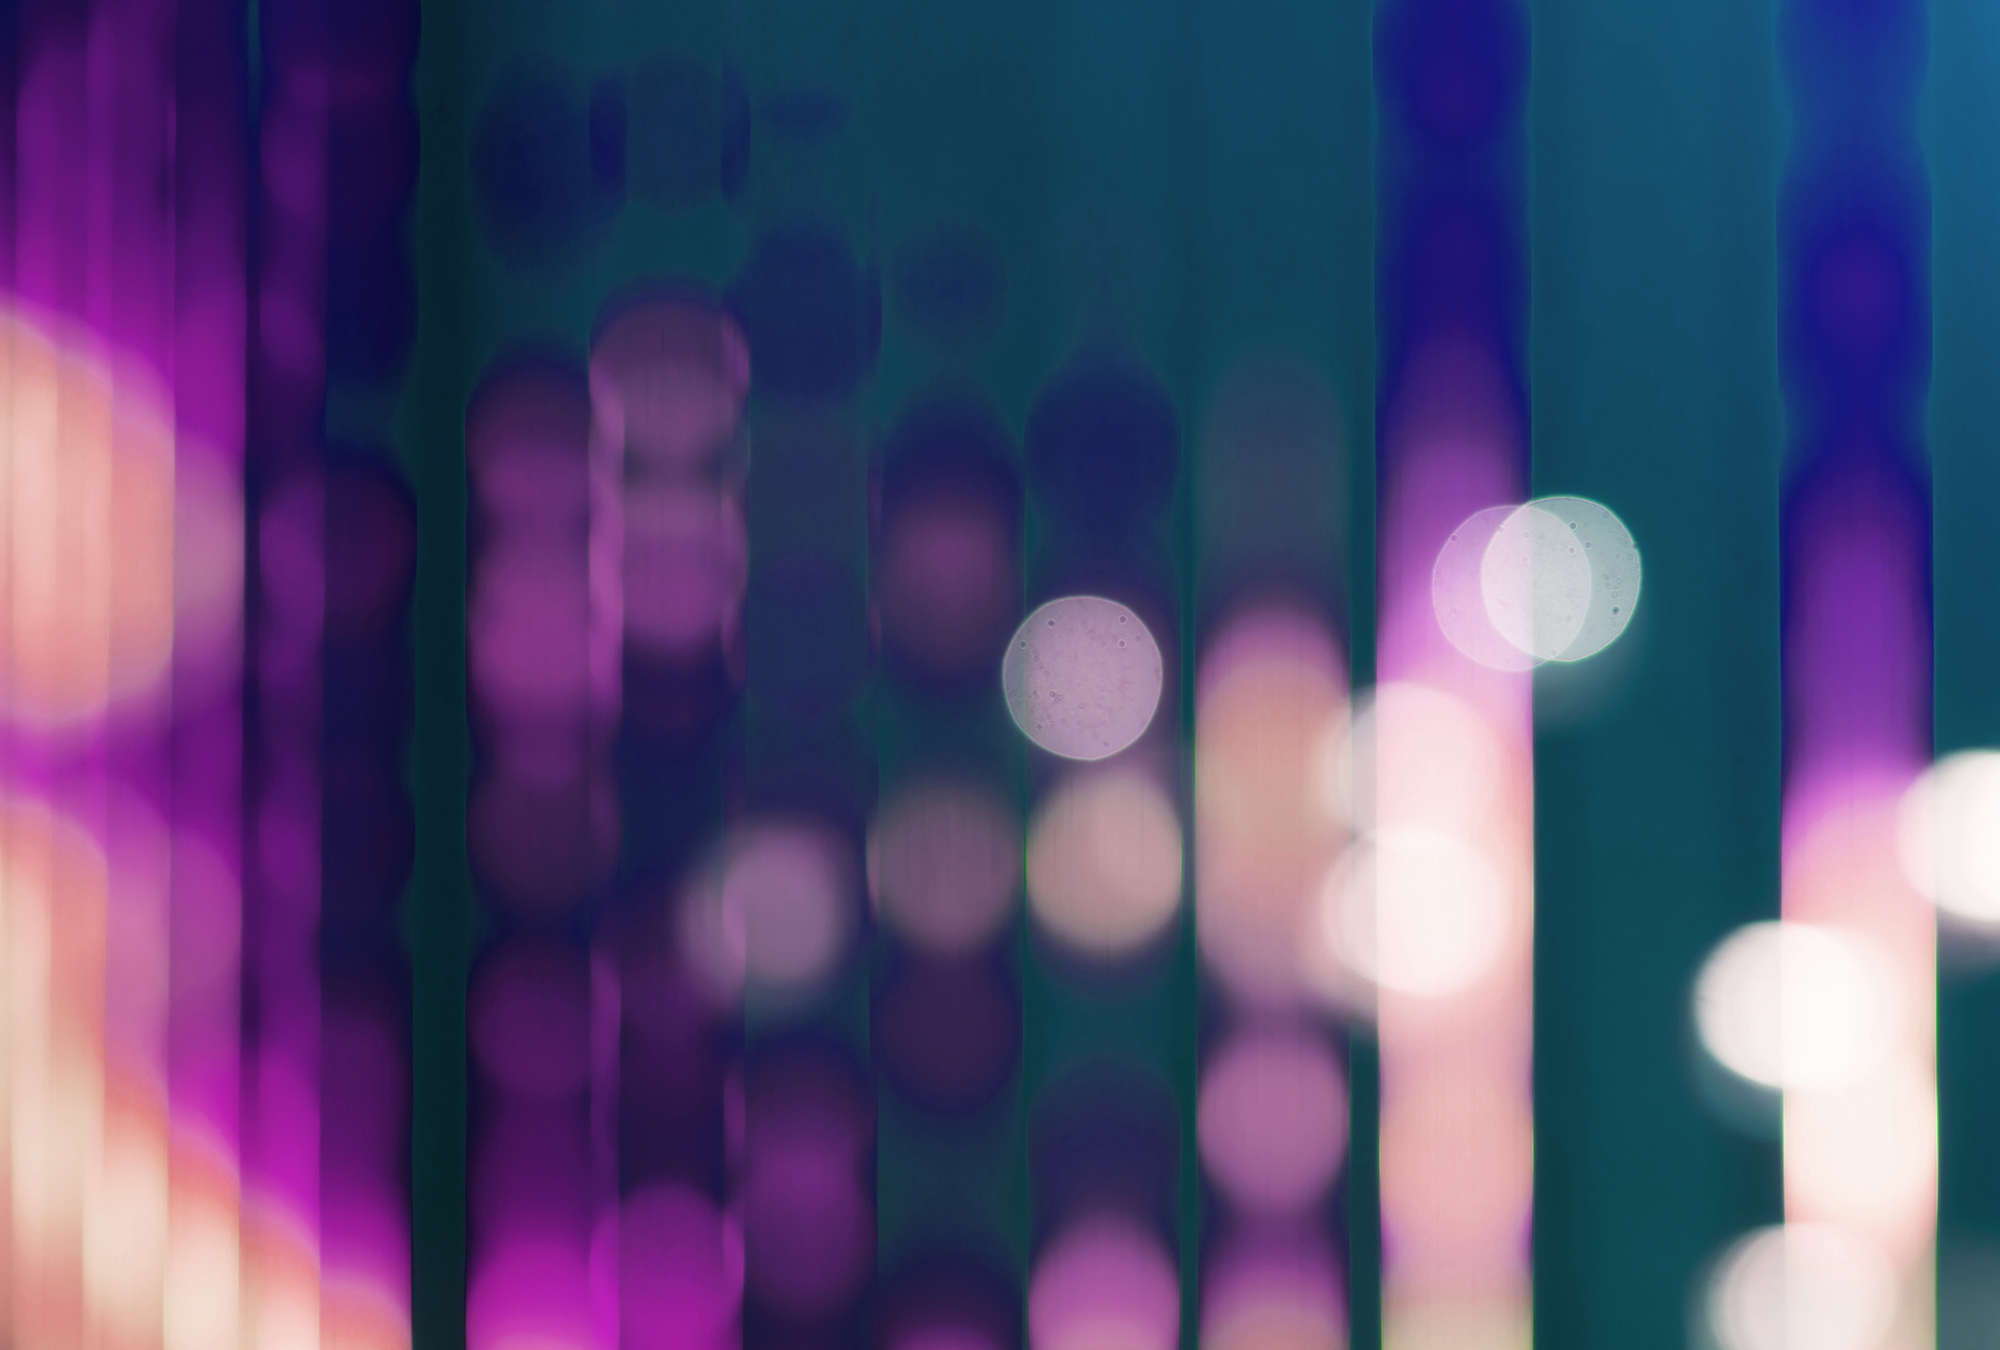             Big City Lights 3 - Papel pintado fotográfico con reflejos de luz en violeta - Azul, Violeta | Premium liso no tejido
        